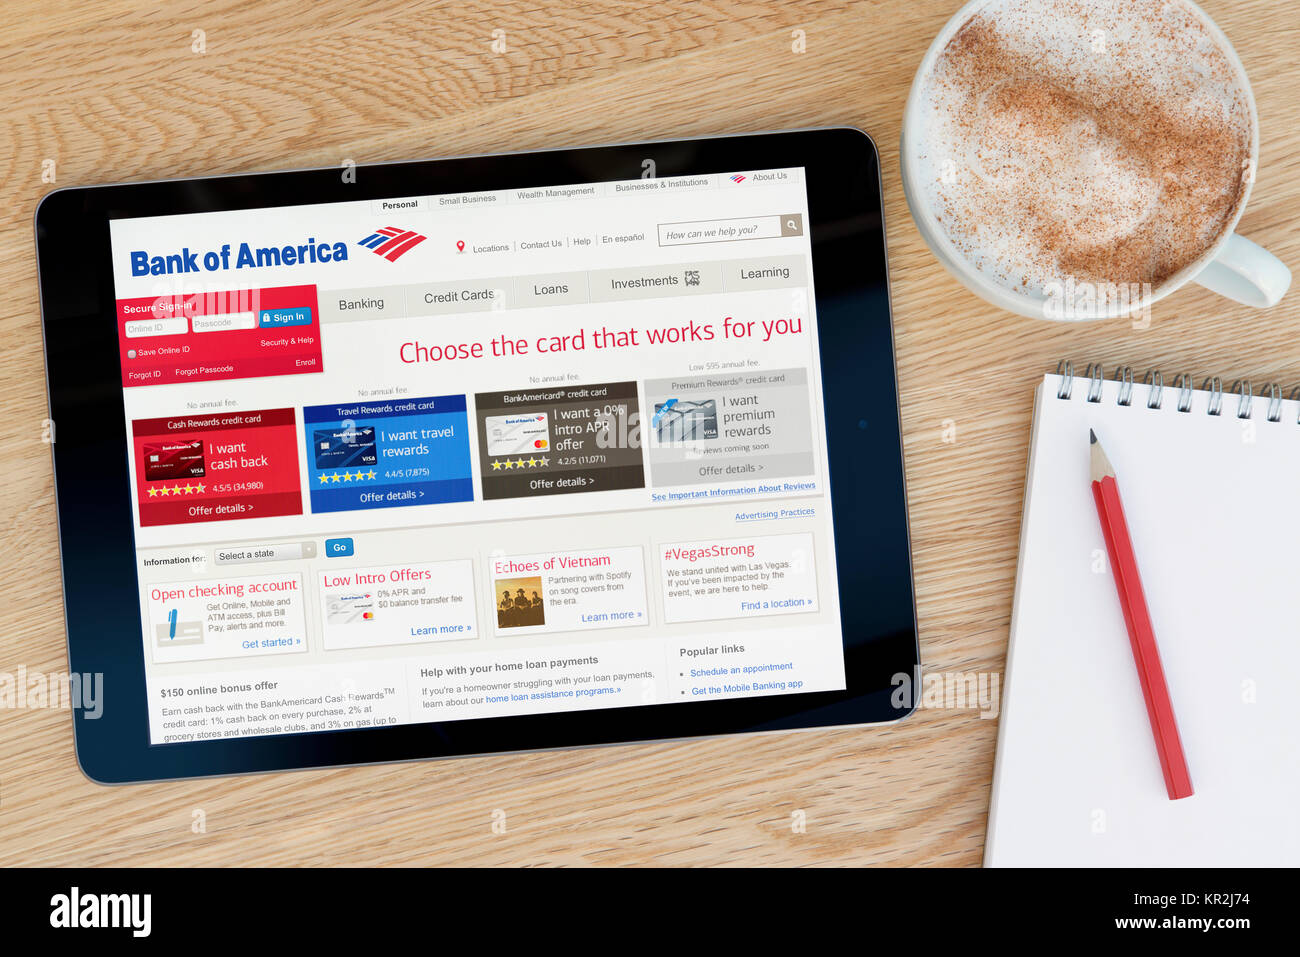 Die Bank von Amerika Web site auf einem iPad Tablet Gerät, das auf einem Tisch liegt neben einem Notizblock und Bleistift und eine Tasse Kaffee (nur redaktionell) Stockfoto